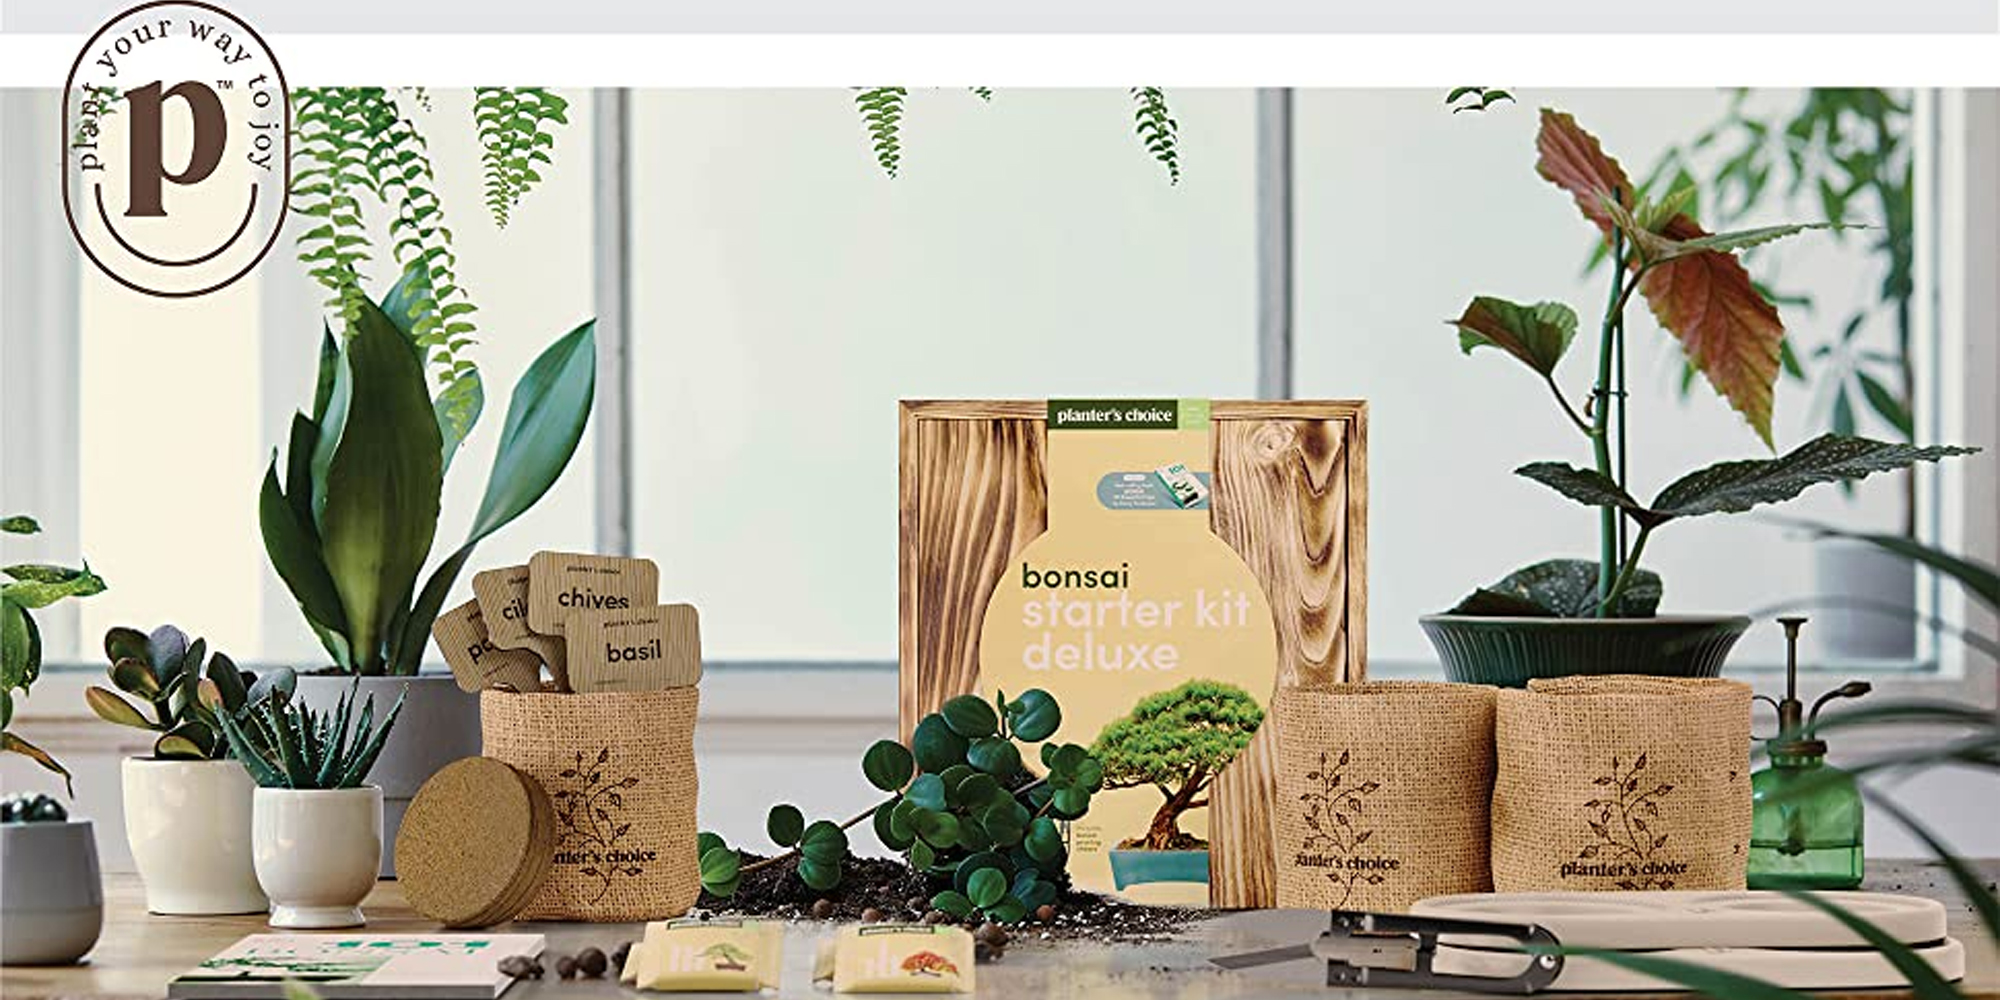 the Complete Kit to Easily Grow 4 Bonsai Planters' Choice Bonsai Starter Kit 